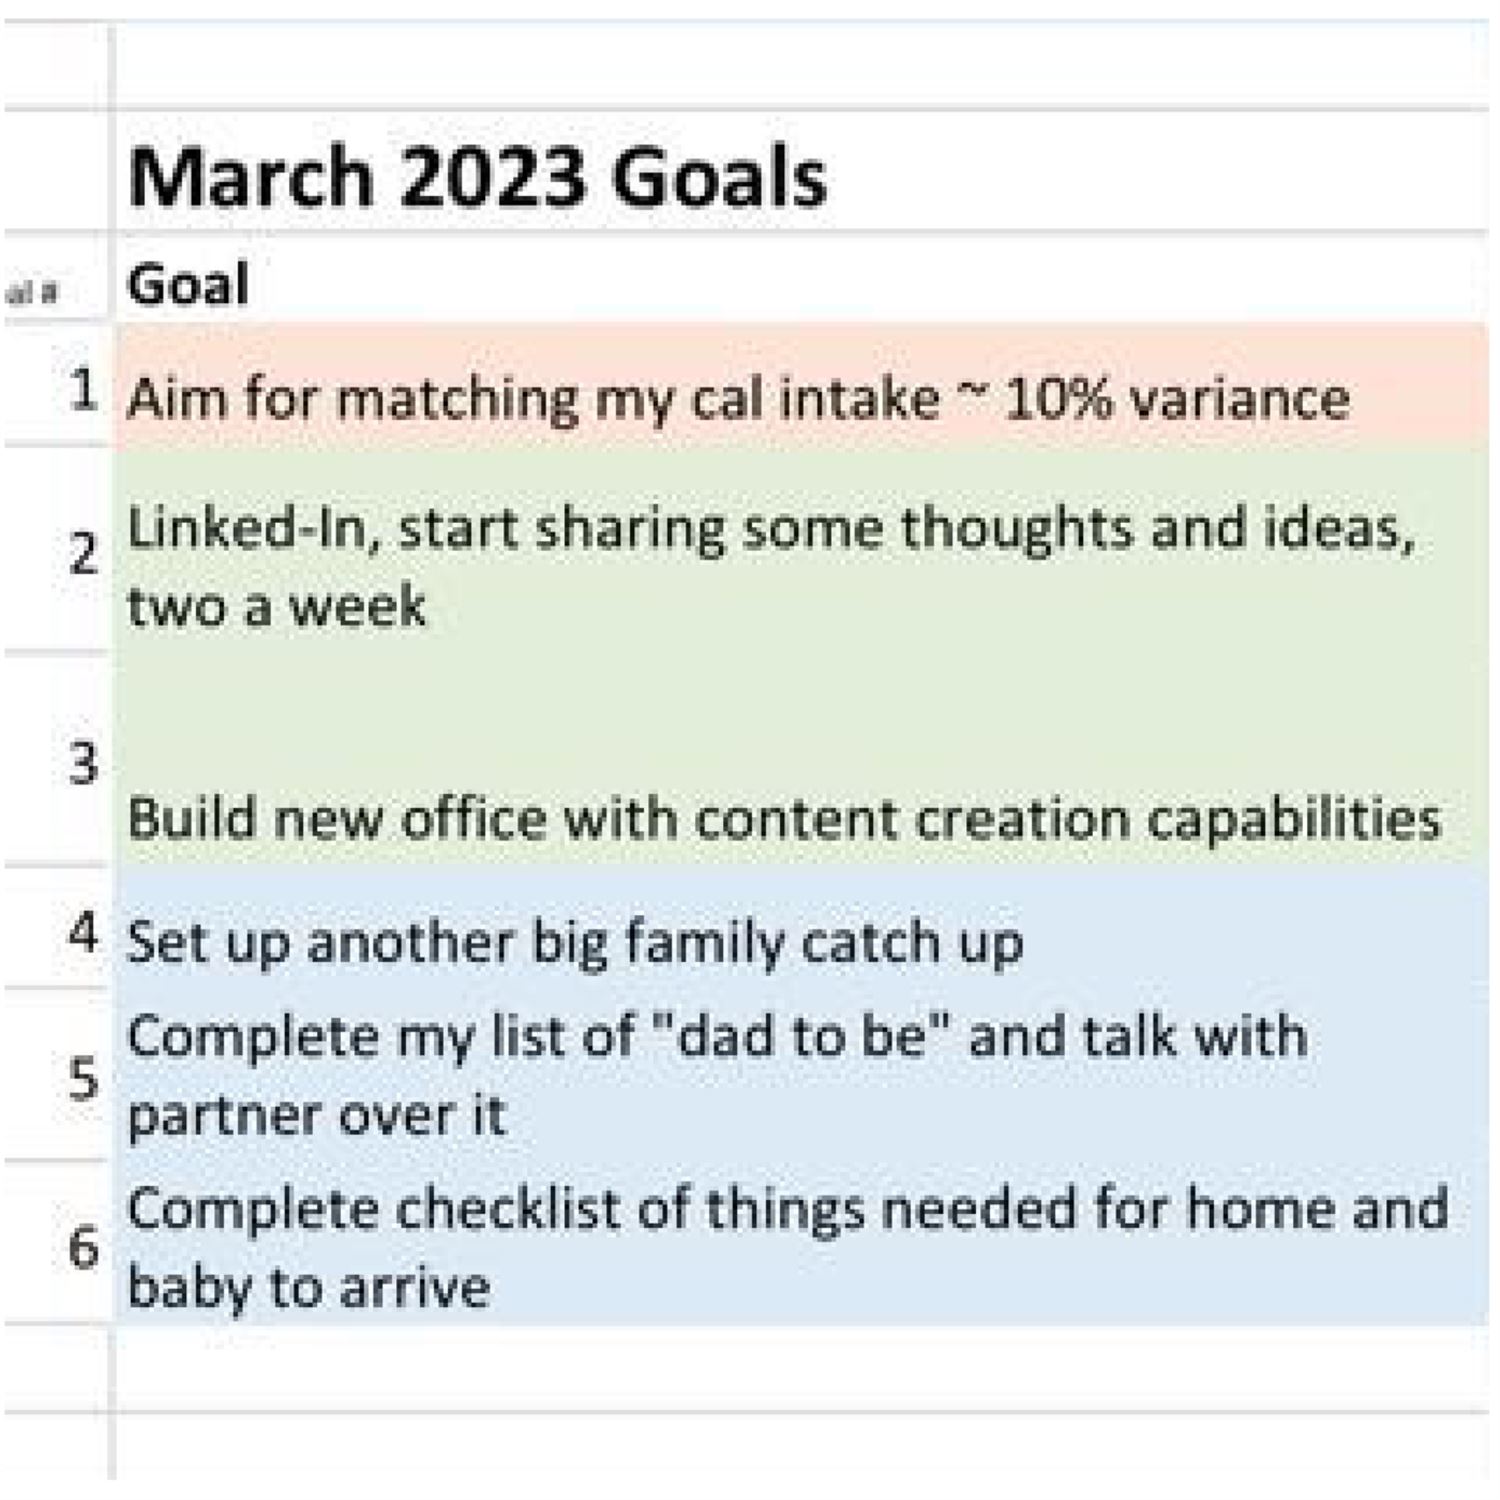 Juan's March Goals